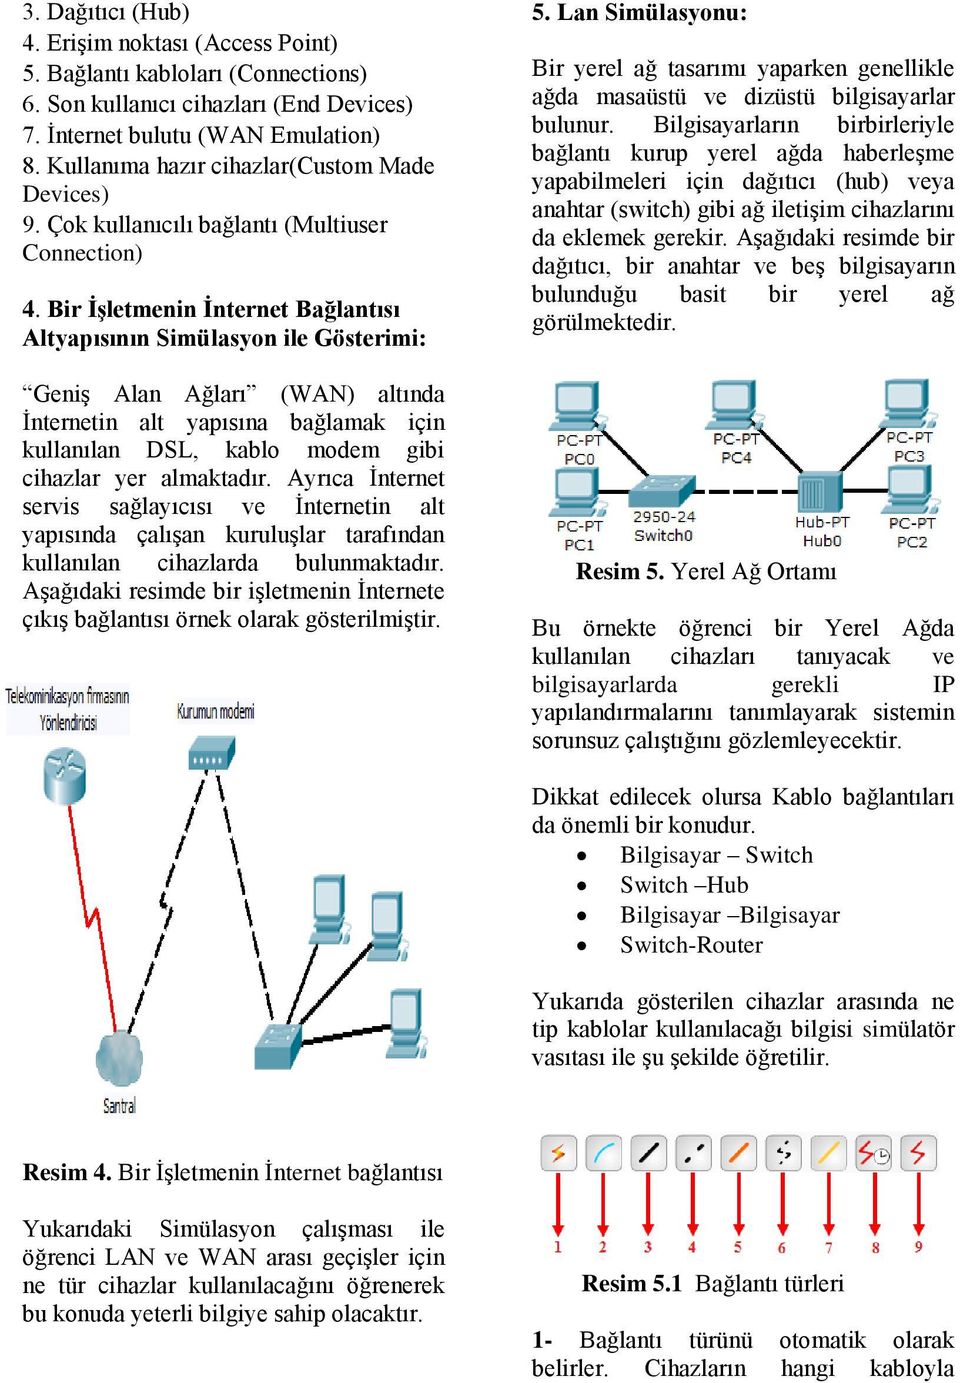 Bir İşletmenin İnternet Bağlantısı Altyapısının Simülasyon ile Gösterimi: Geniş Alan Ağları (WAN) altında İnternetin alt yapısına bağlamak için kullanılan DSL, kablo modem gibi cihazlar yer